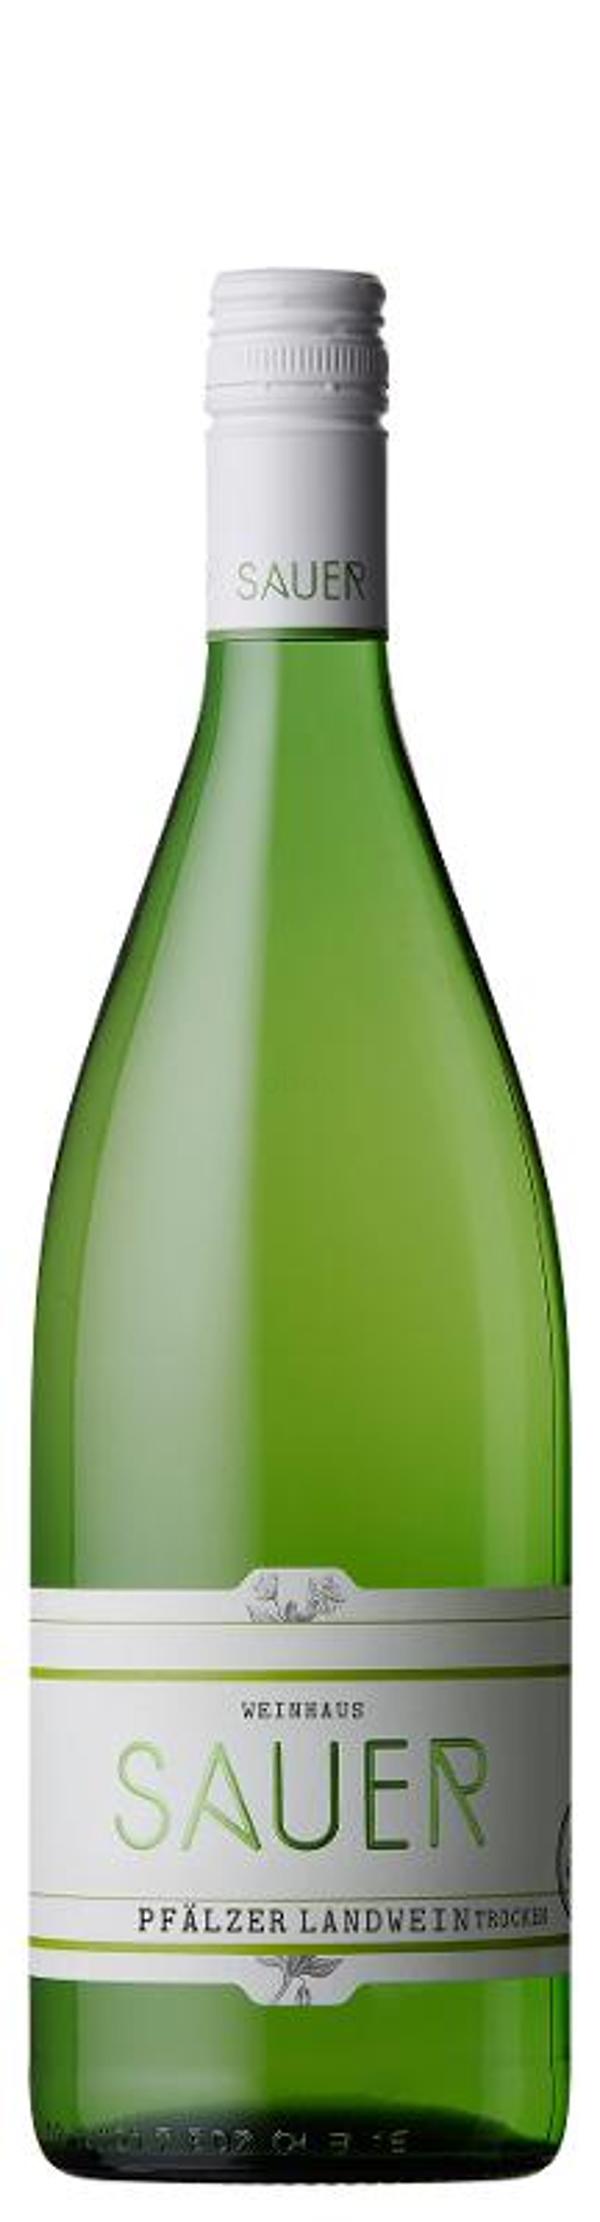 Produktfoto zu trockener Pfälzer Landwein weiß Kiste 6*1L